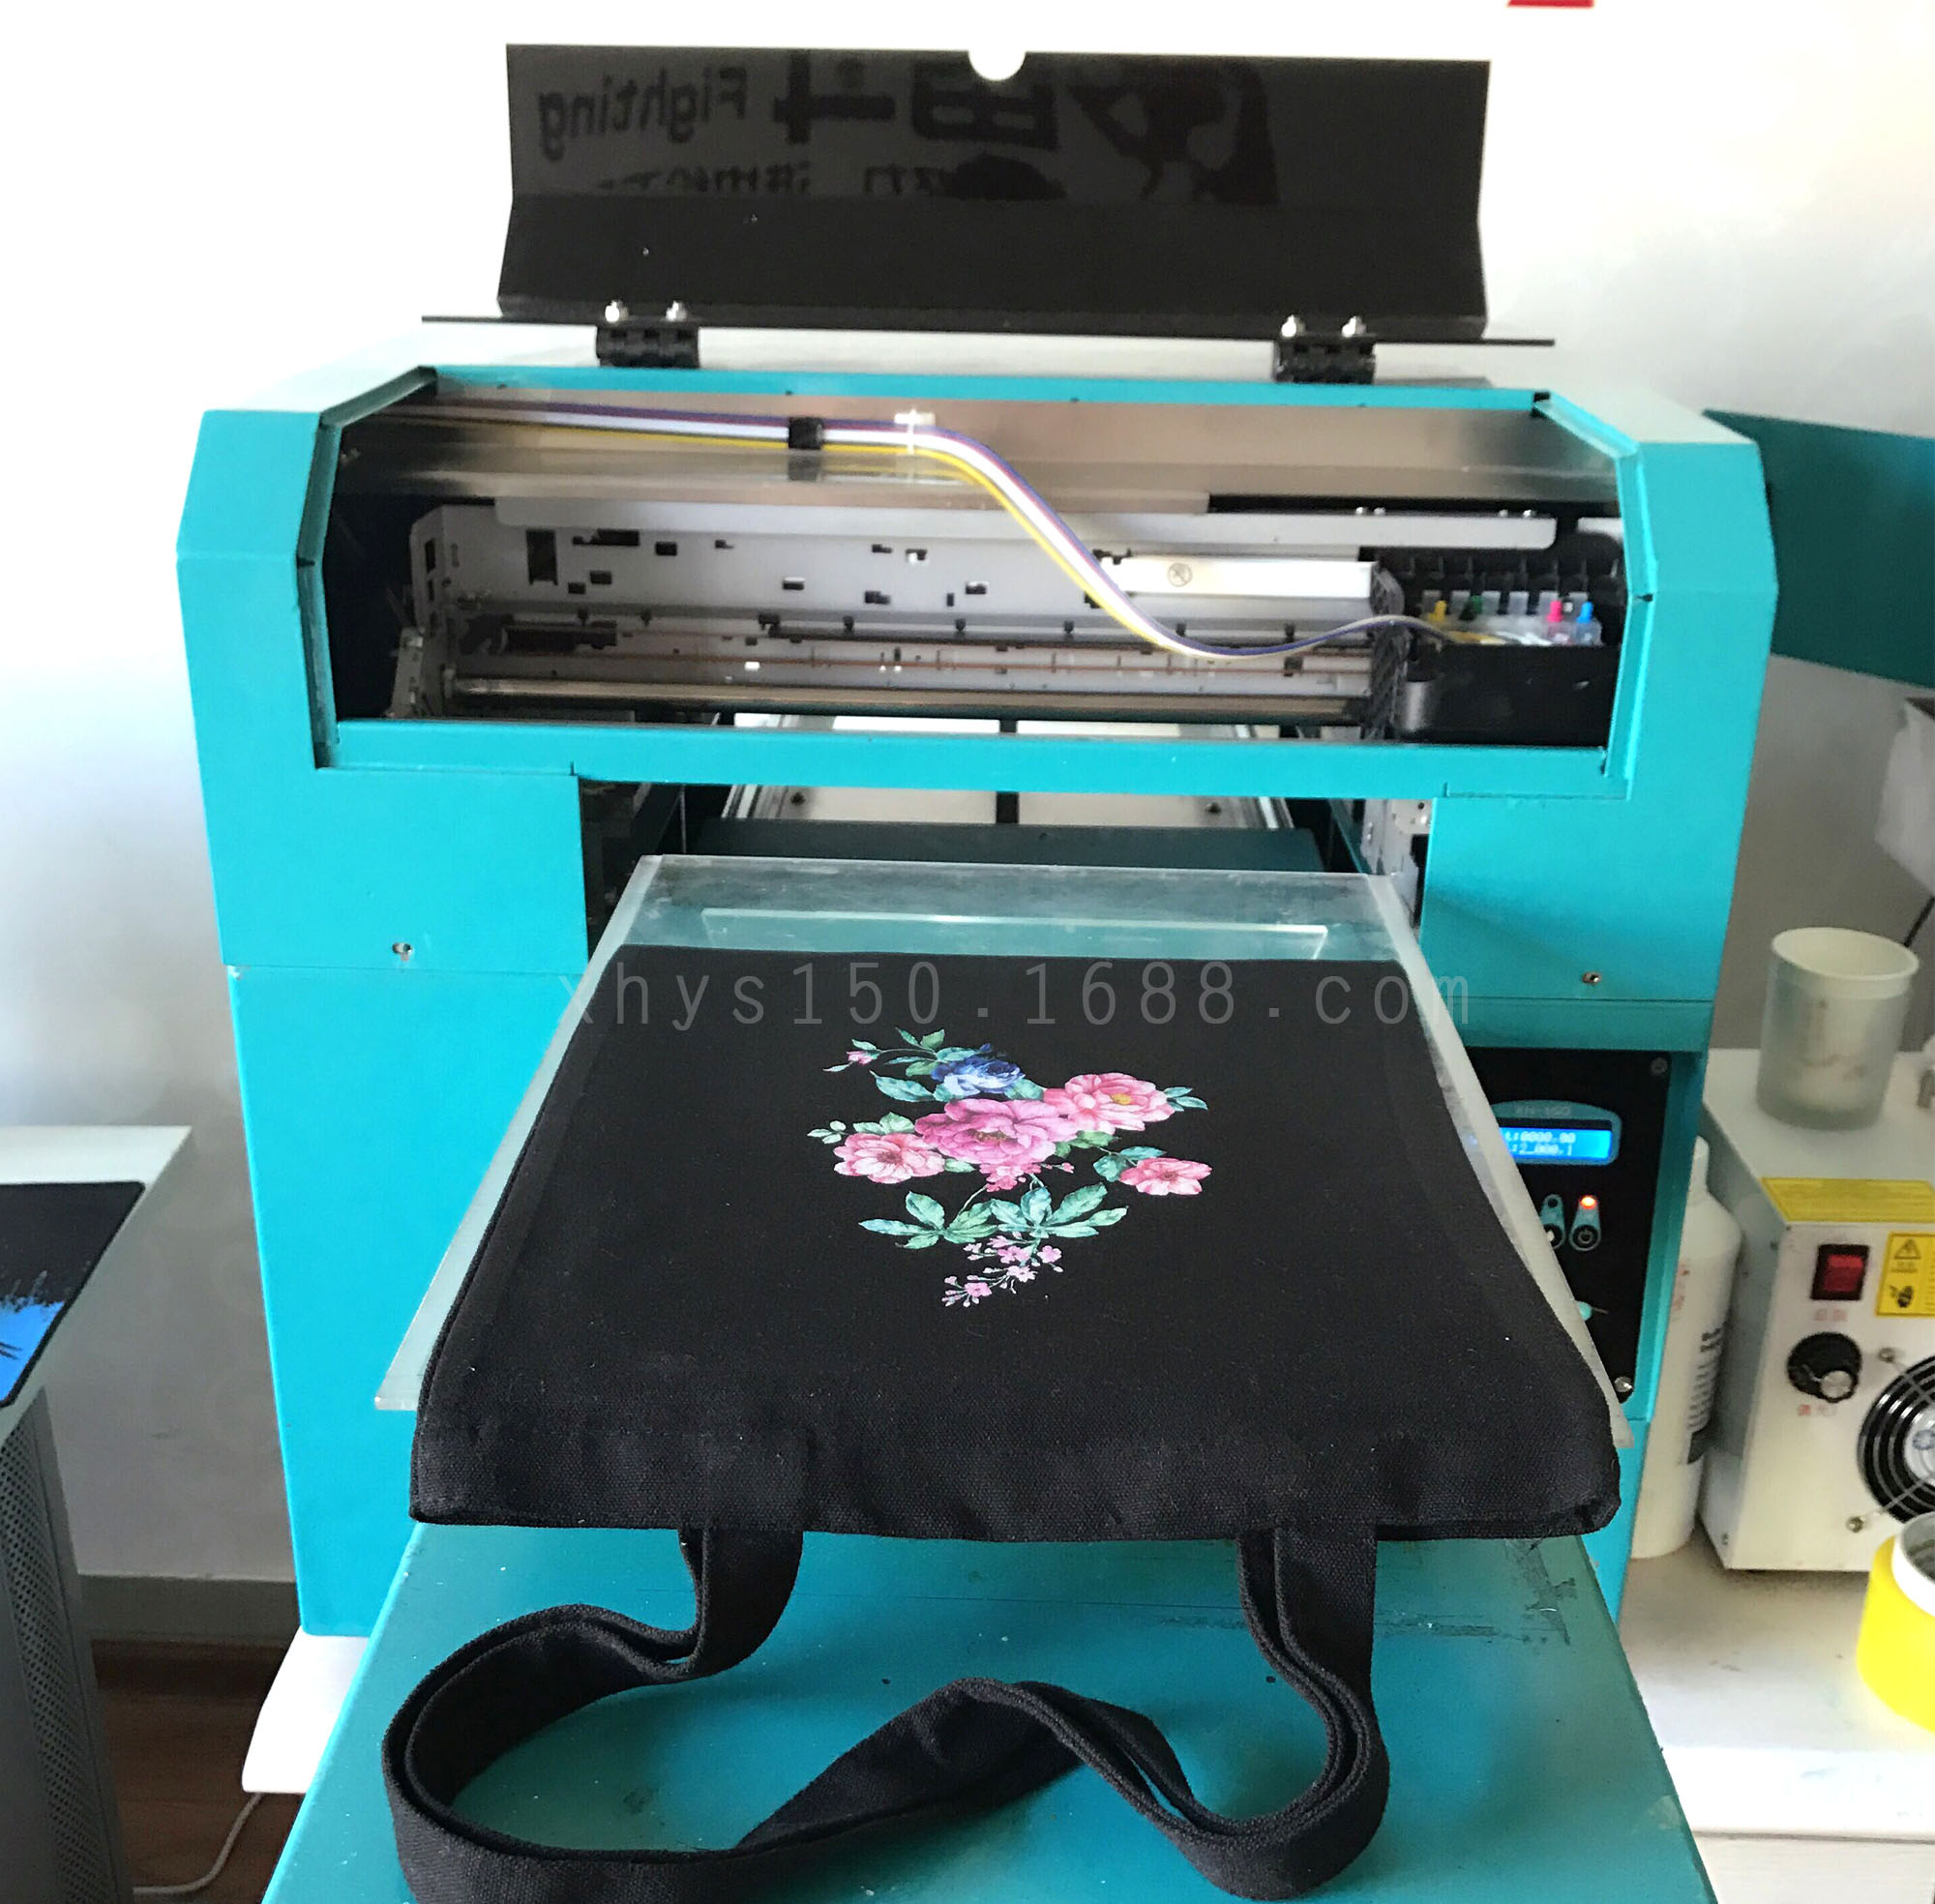 口袋打印机有必要买吗_口袋打印机是什么_口袋打印机的优缺点